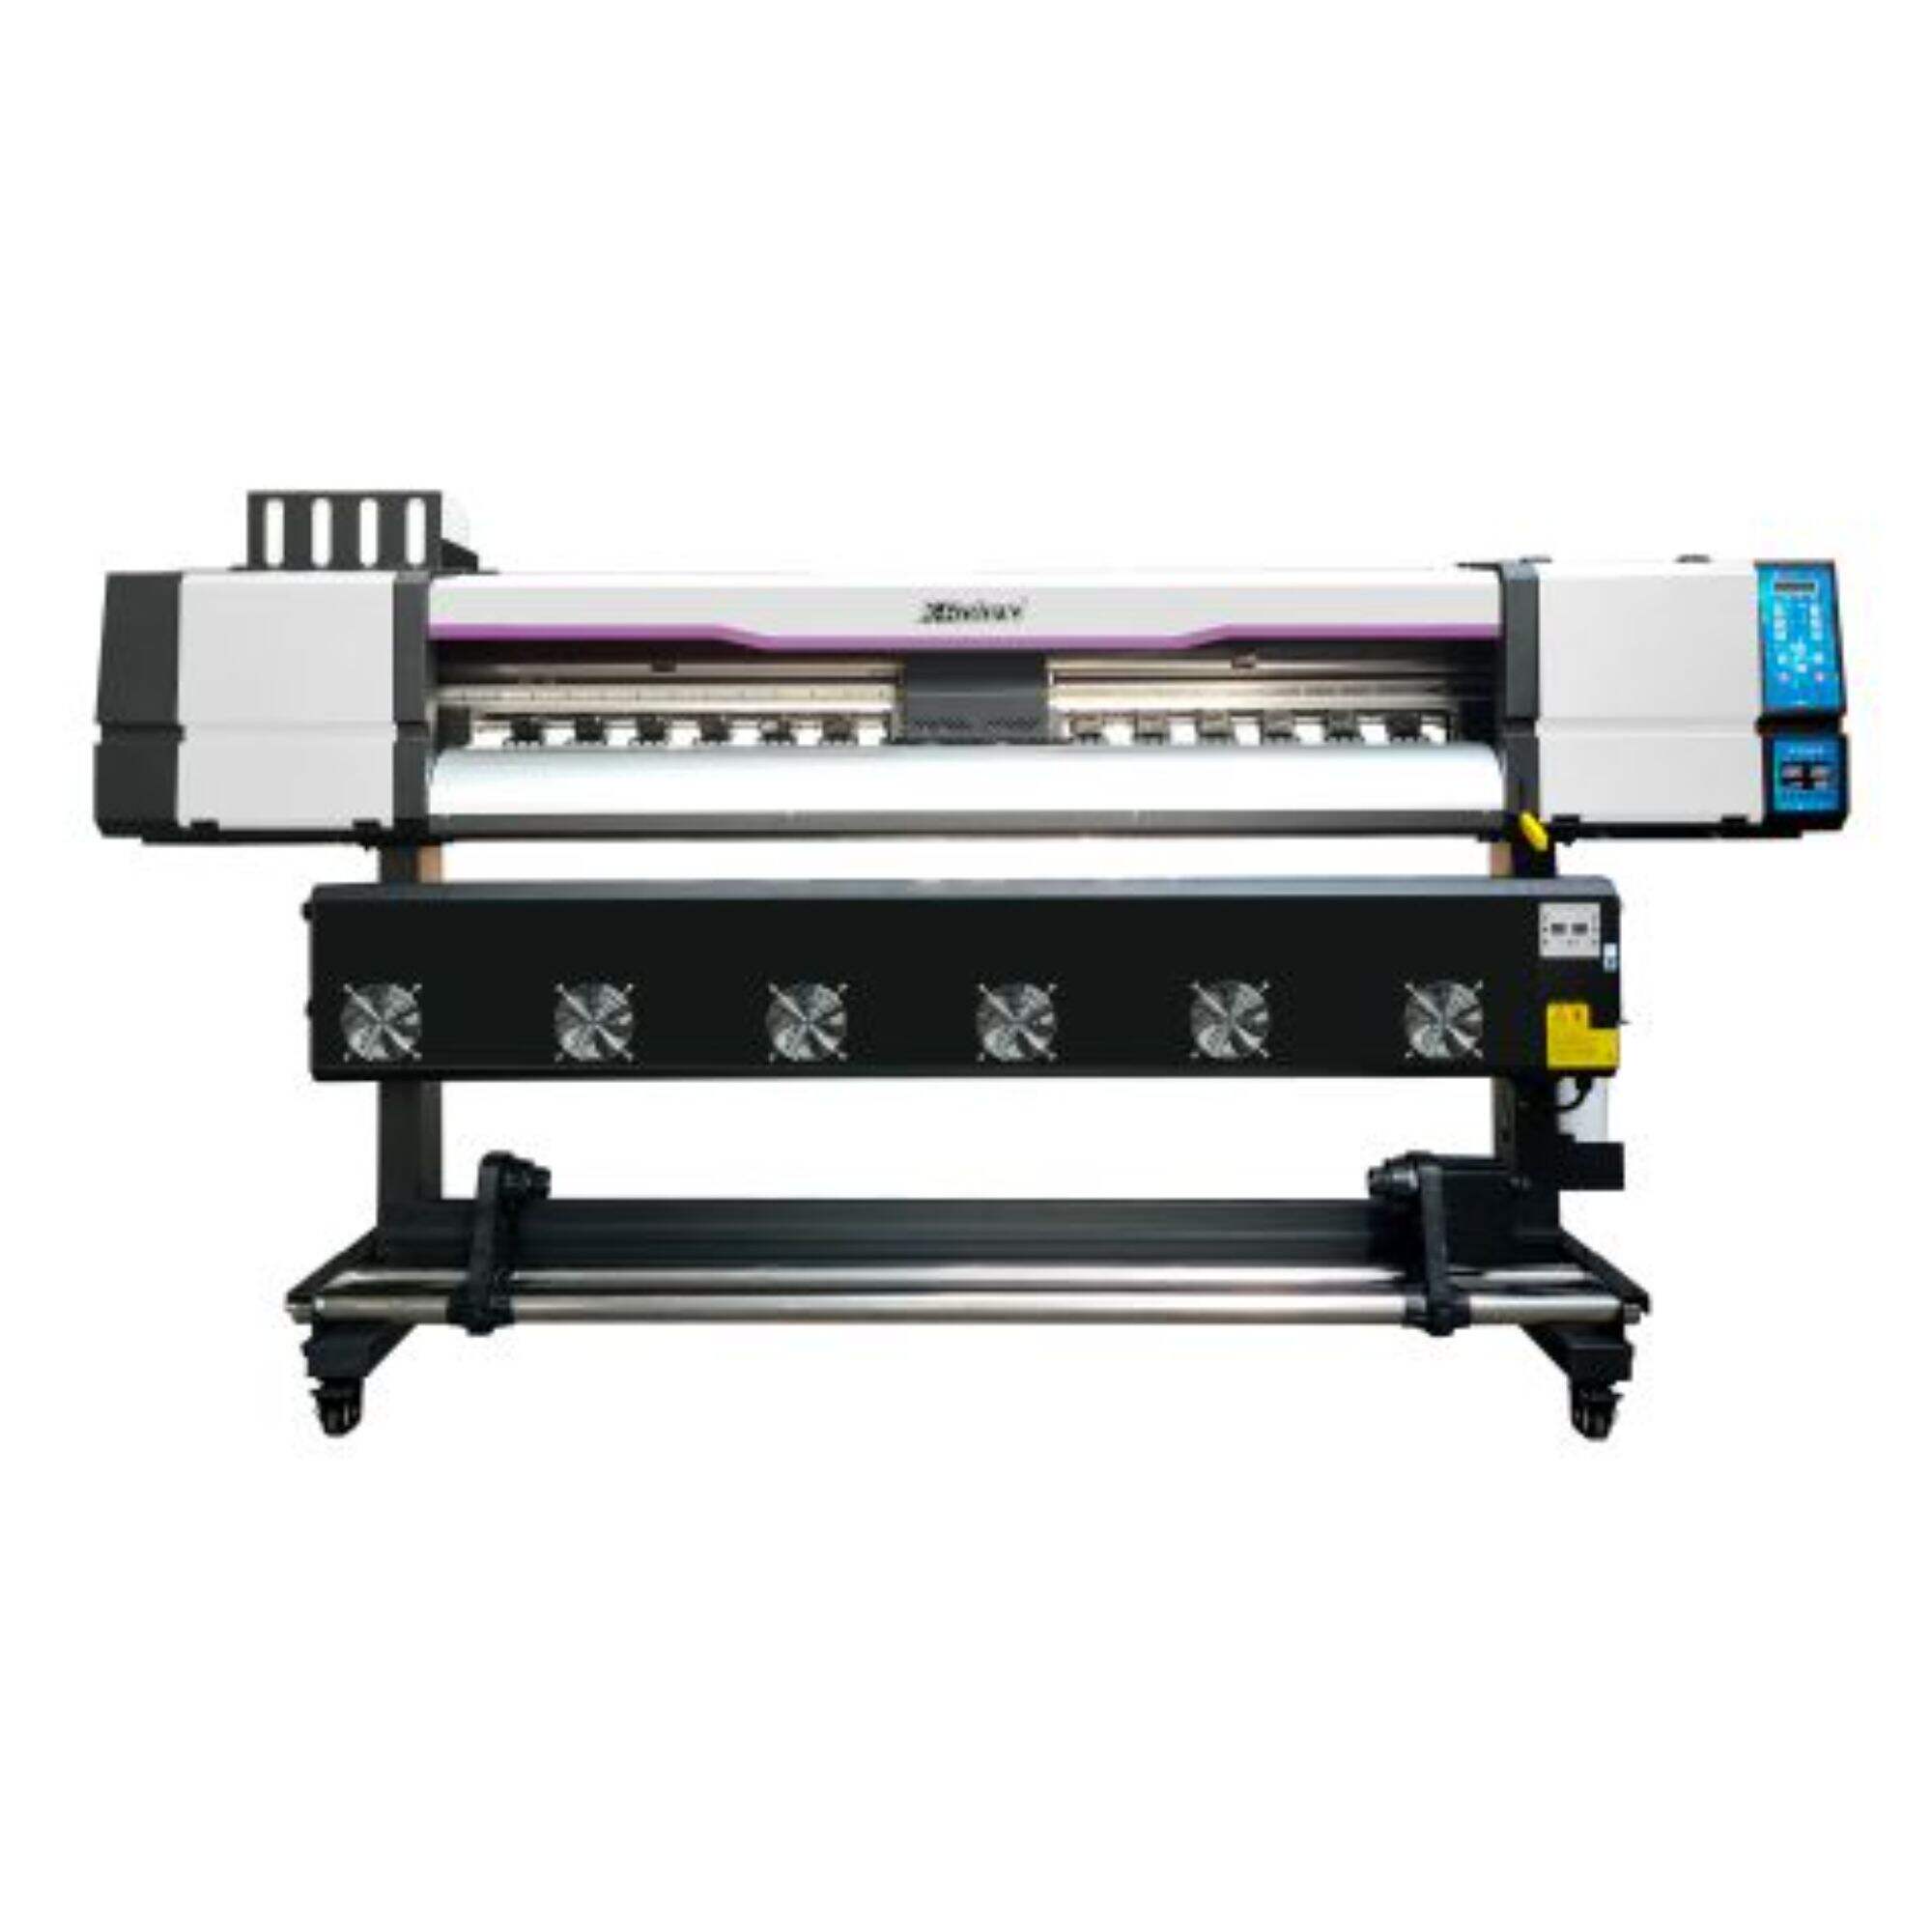 XL-1602H I3200 Printer dalam/luar ruangan